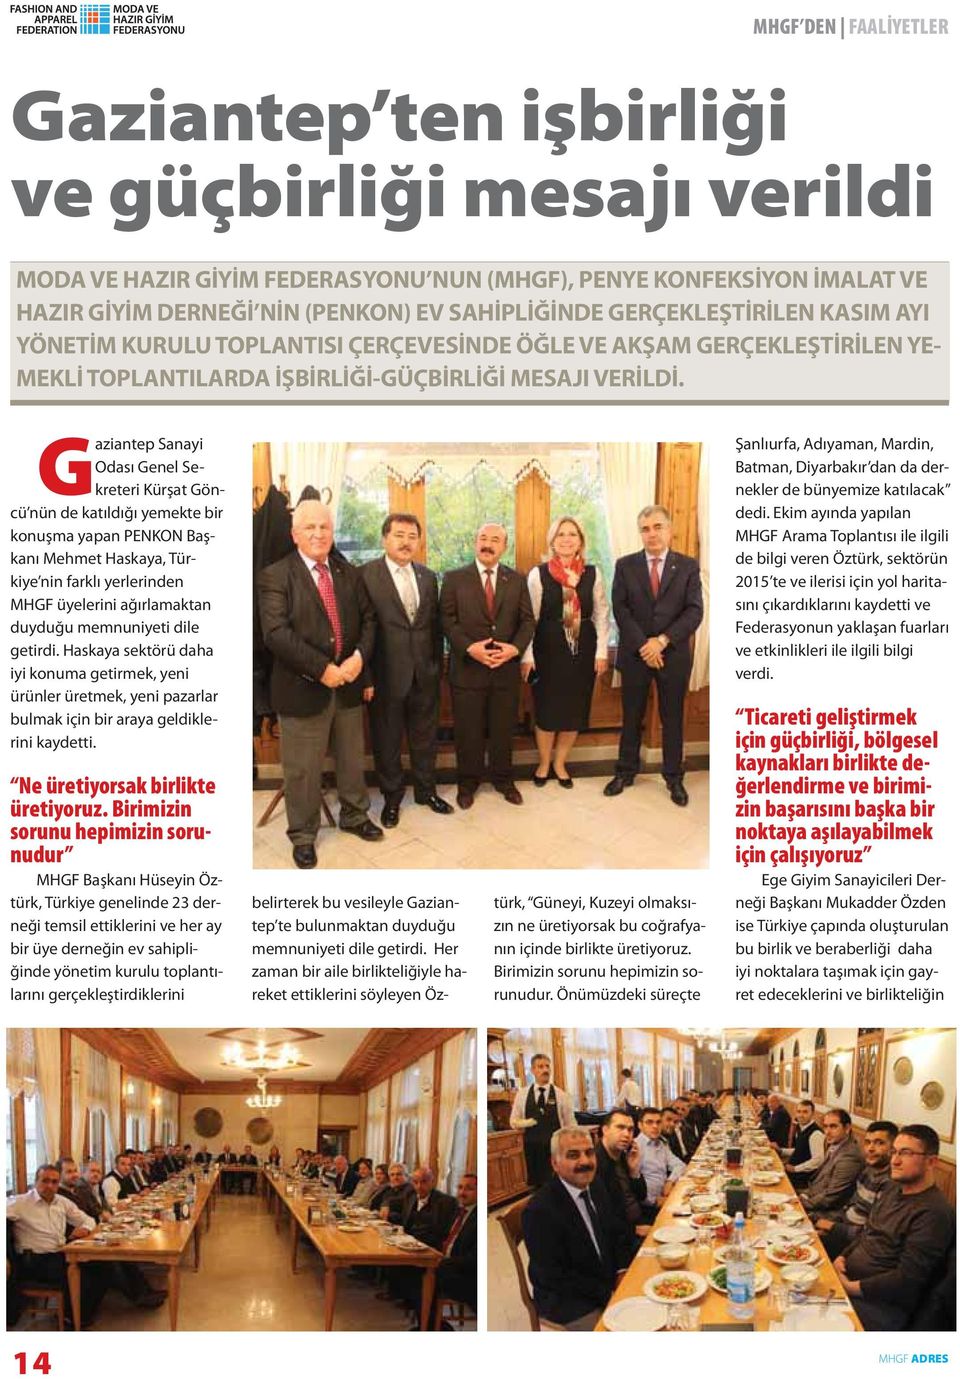 Gaziantep Sanayi Odası Genel Sekreteri Kürşat Göncü nün de katıldığı yemekte bir konuşma yapan PENKON Başkanı Mehmet Haskaya, Türkiye nin farklı yerlerinden MHGF üyelerini ağırlamaktan duyduğu